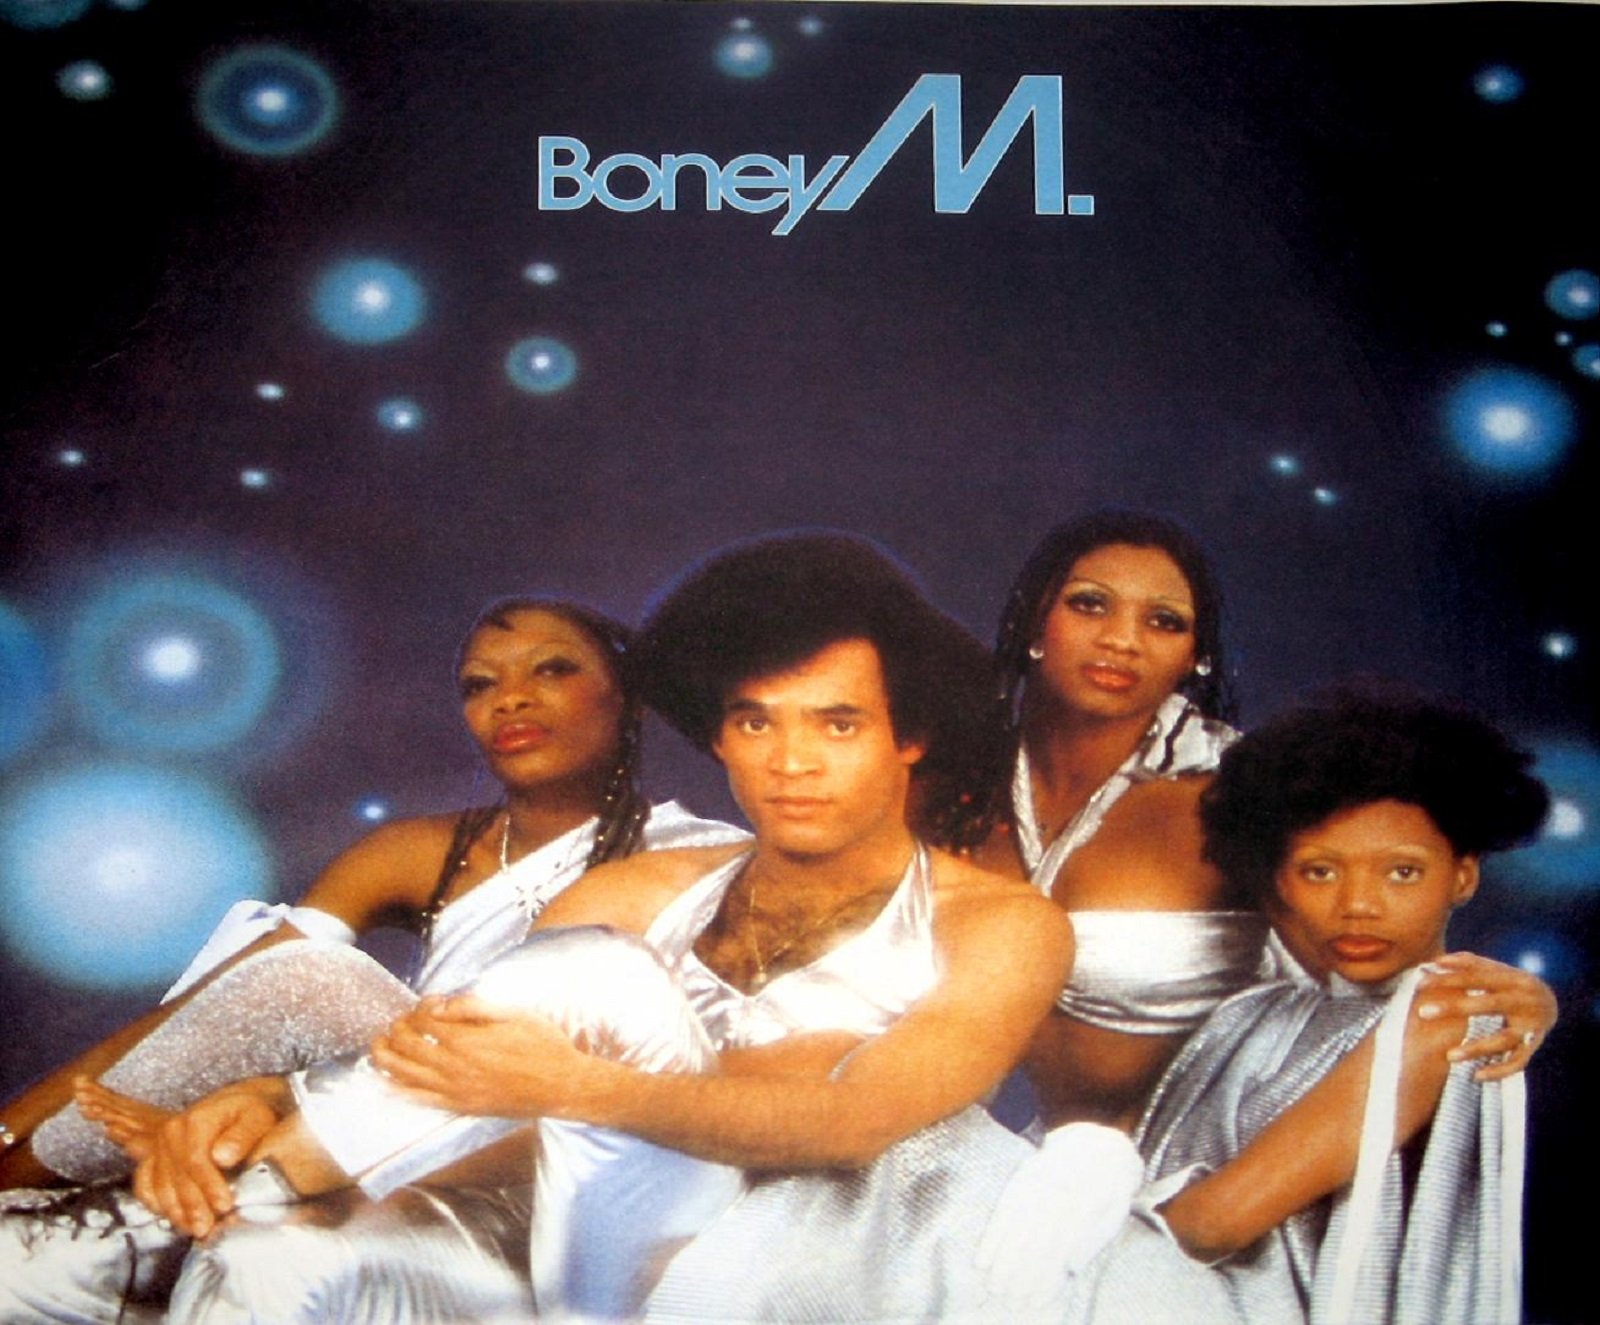 Boney M celebrará la gira de sus 40 años en Sons del Món